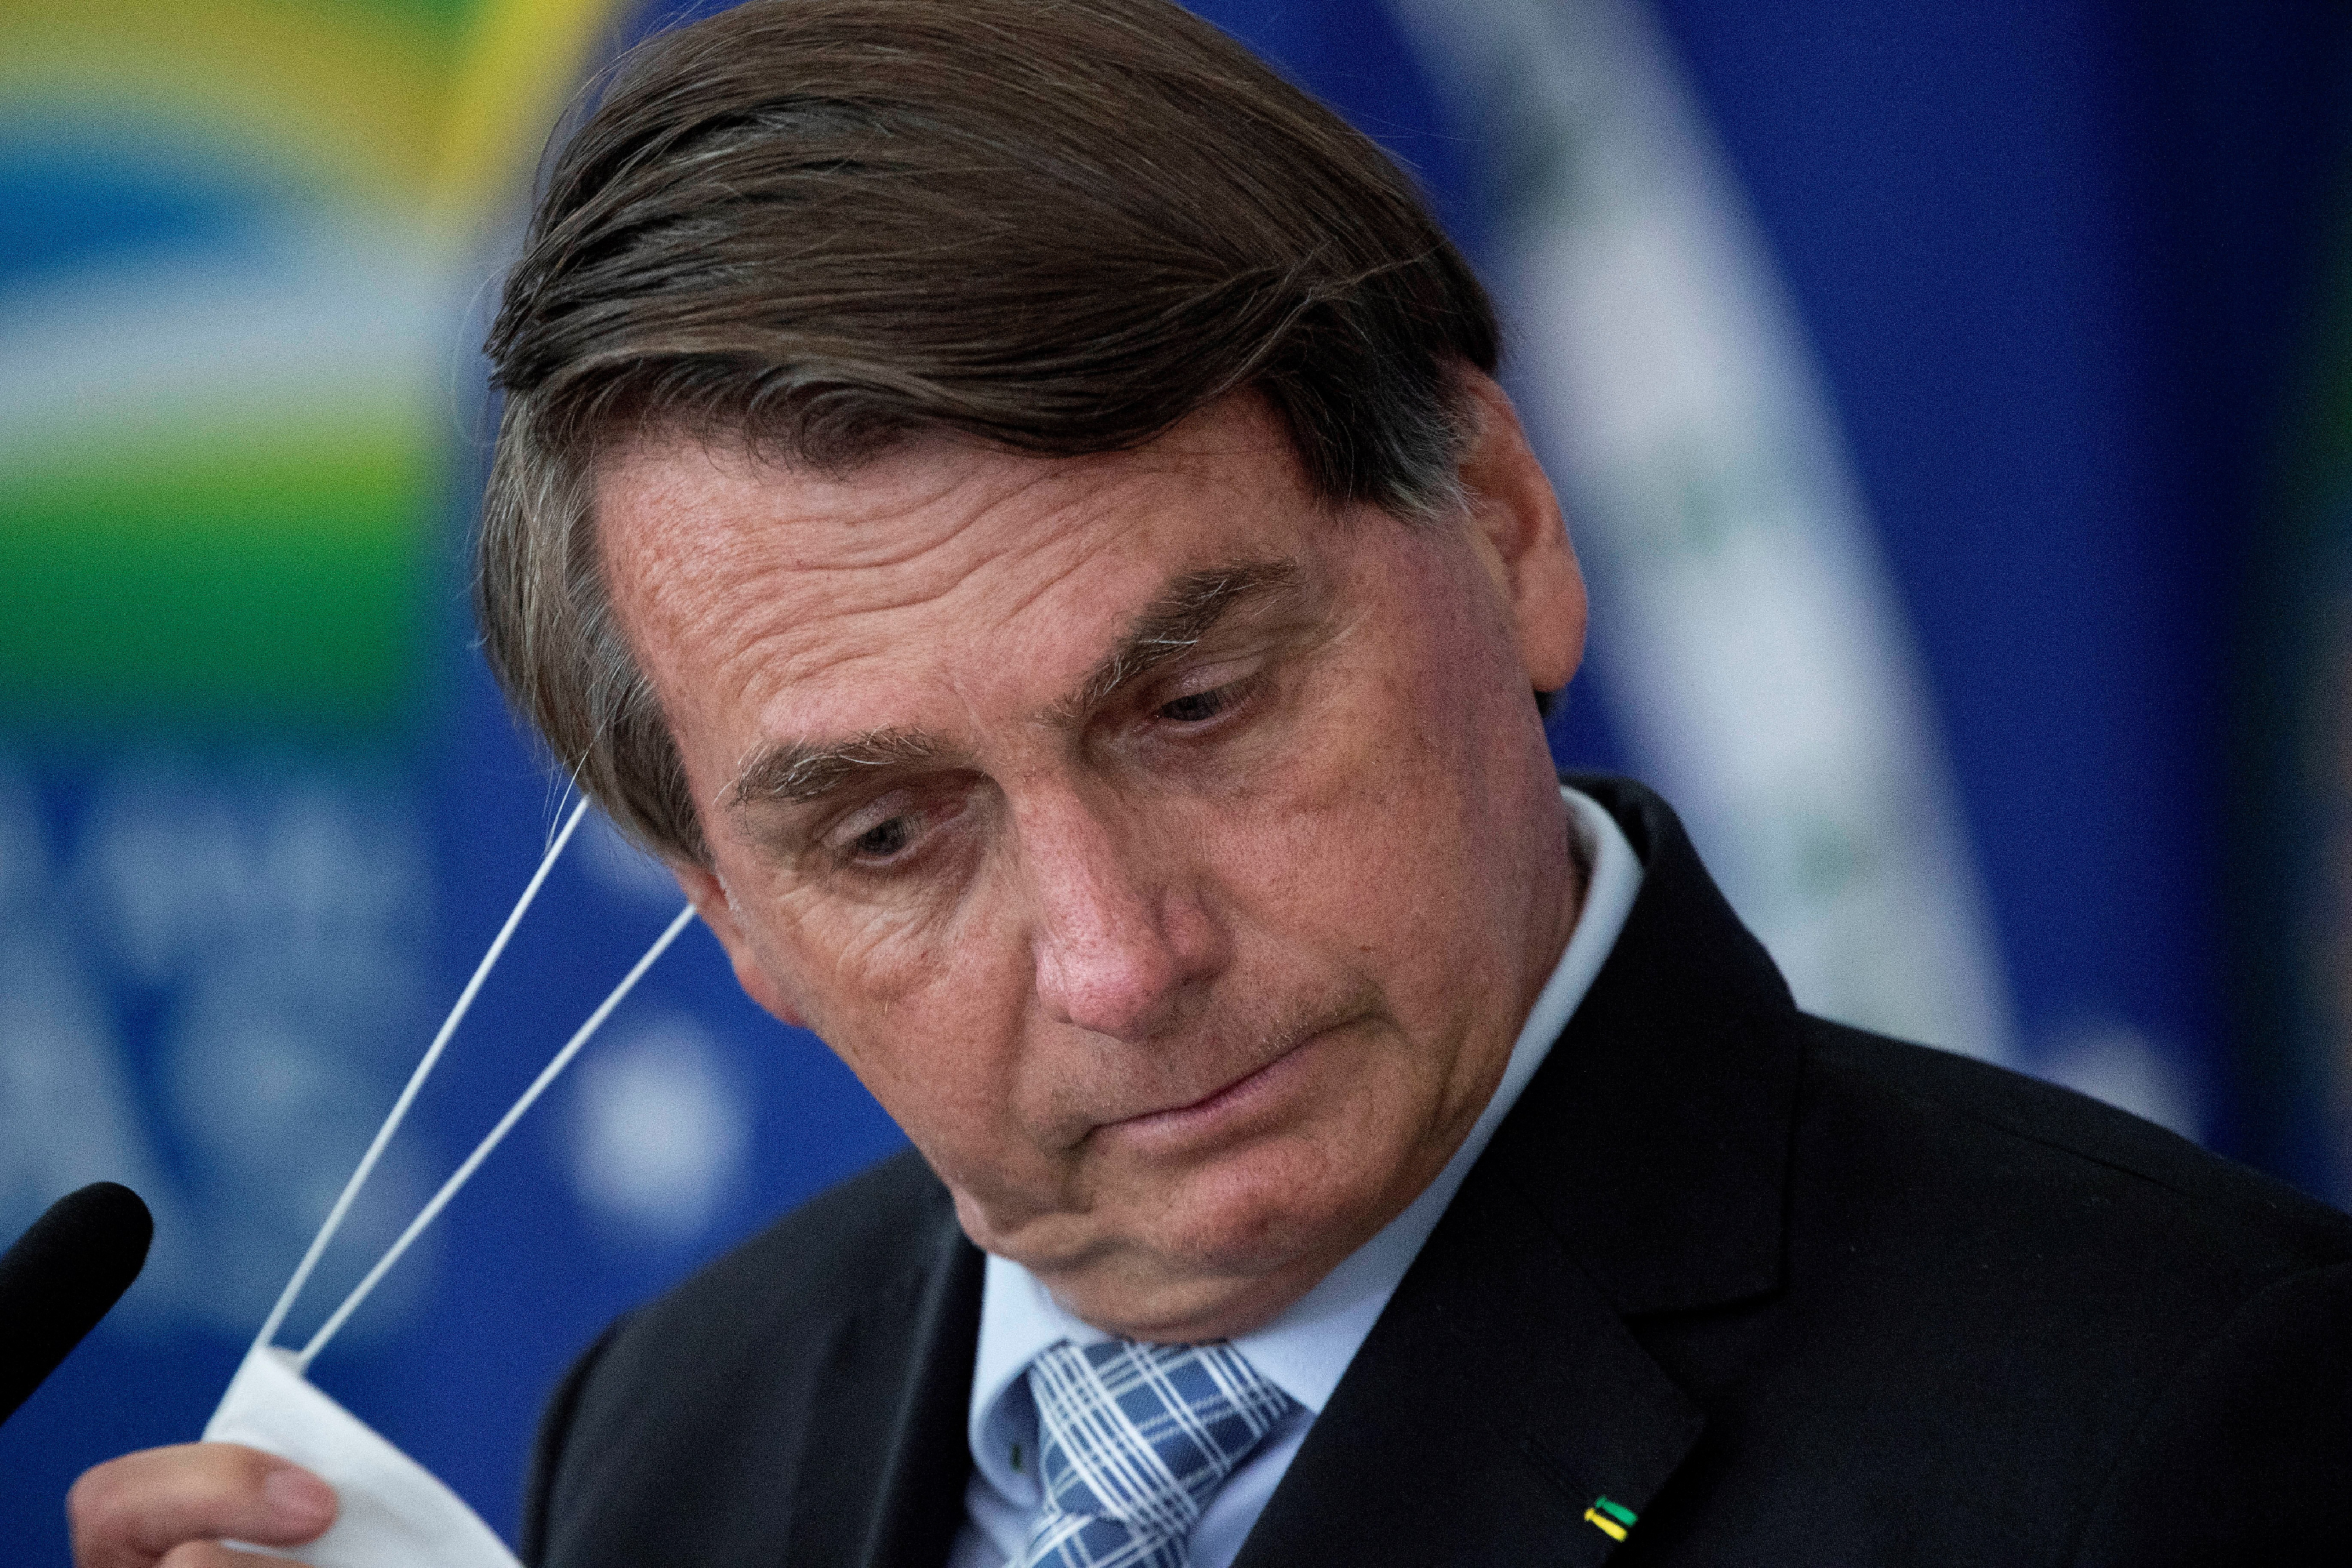 Nem tudja abbahagyni a csuklást a brazil elnök, kórházba vitték